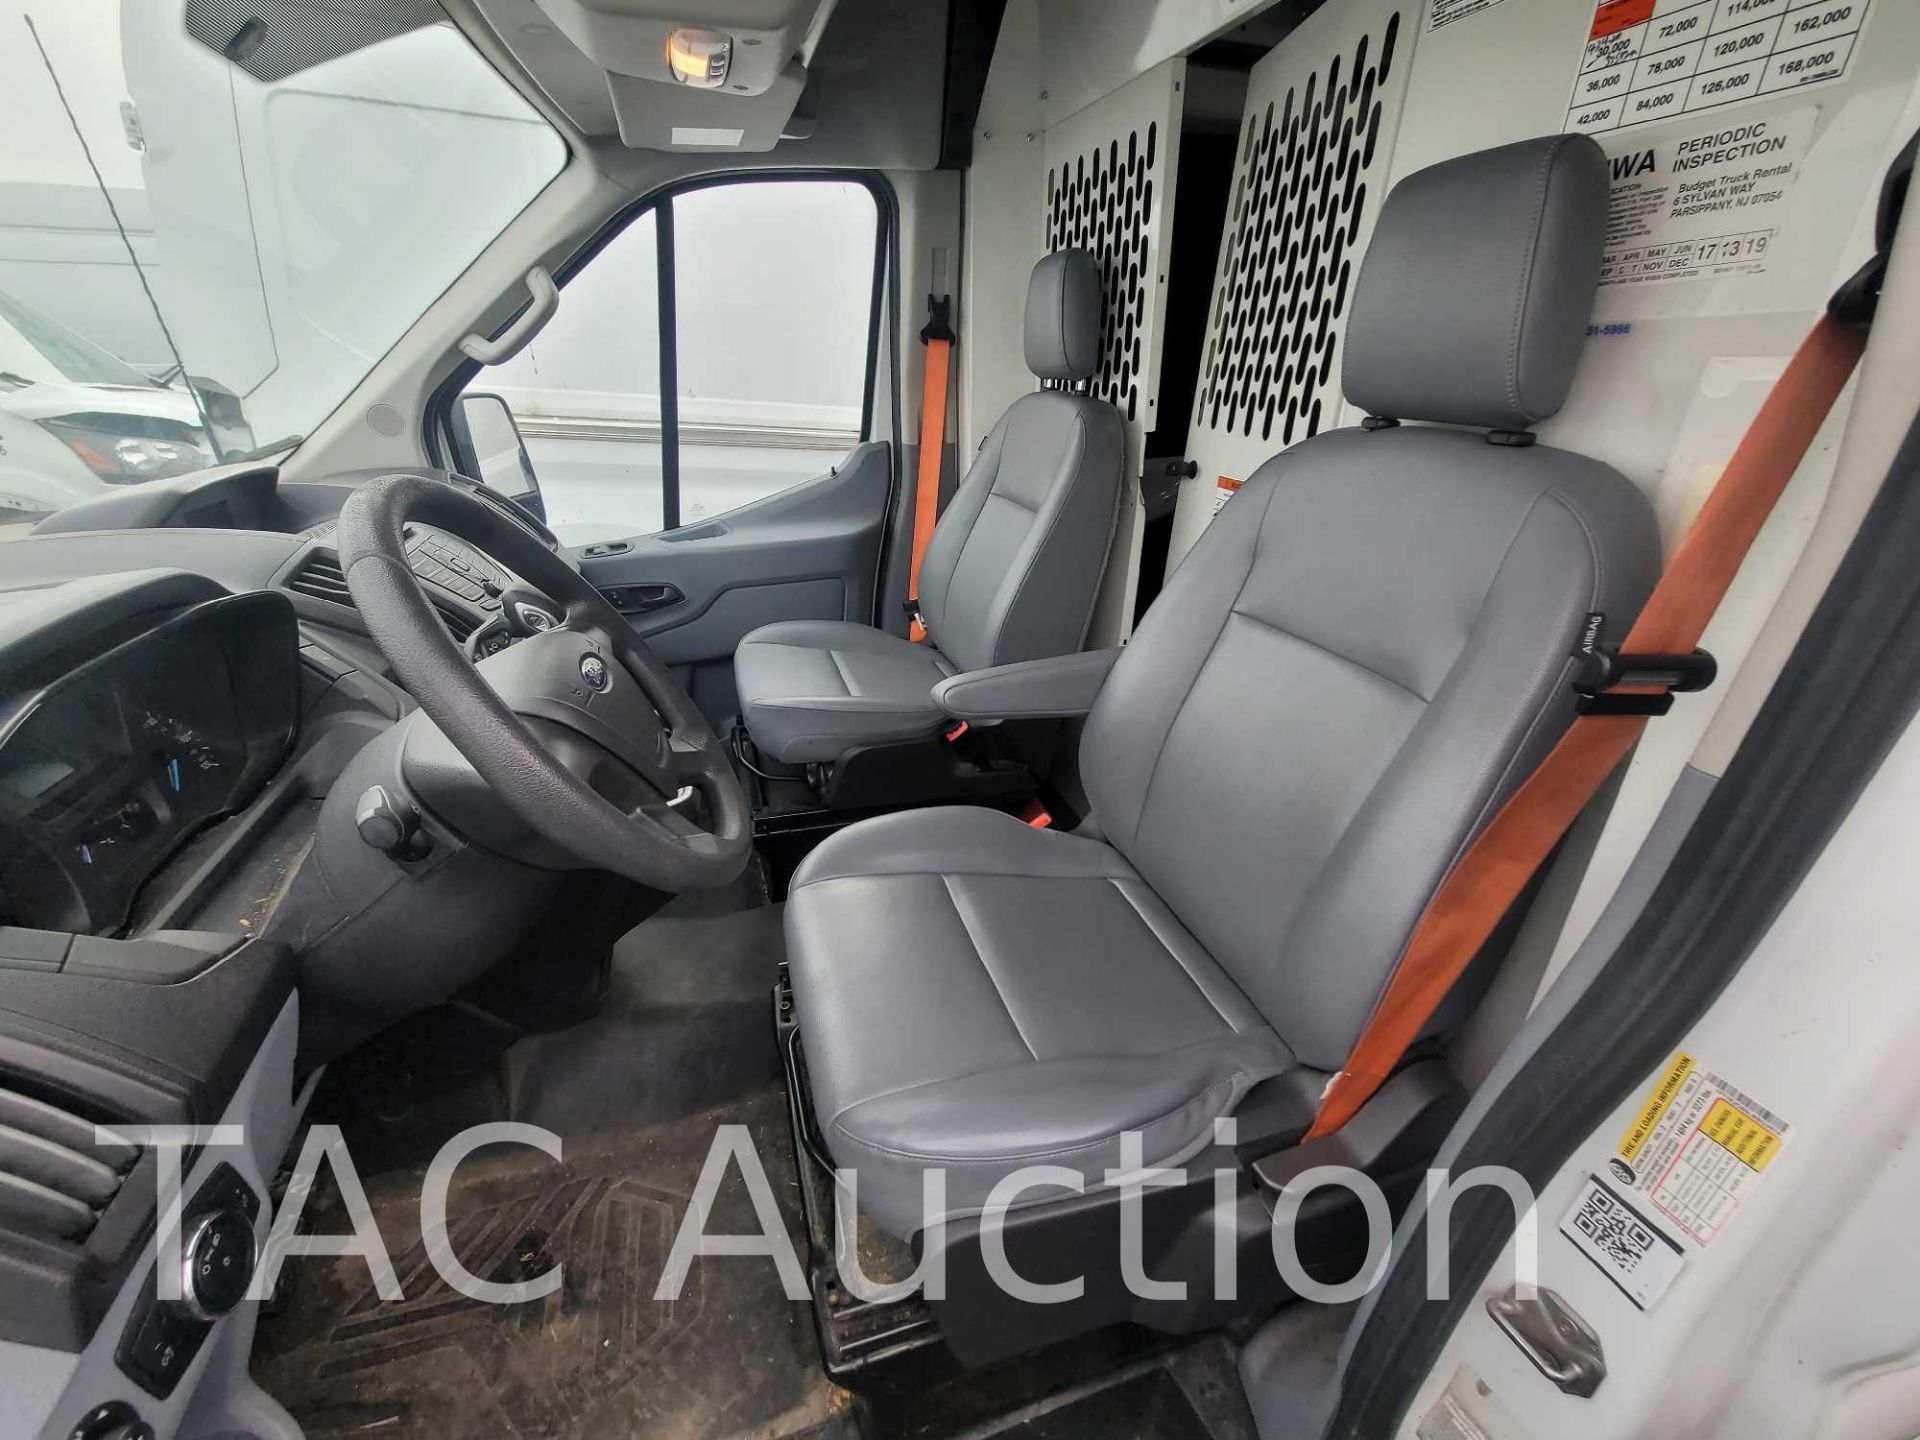 2018 Ford Transit 150 Cargo Van - Image 10 of 47